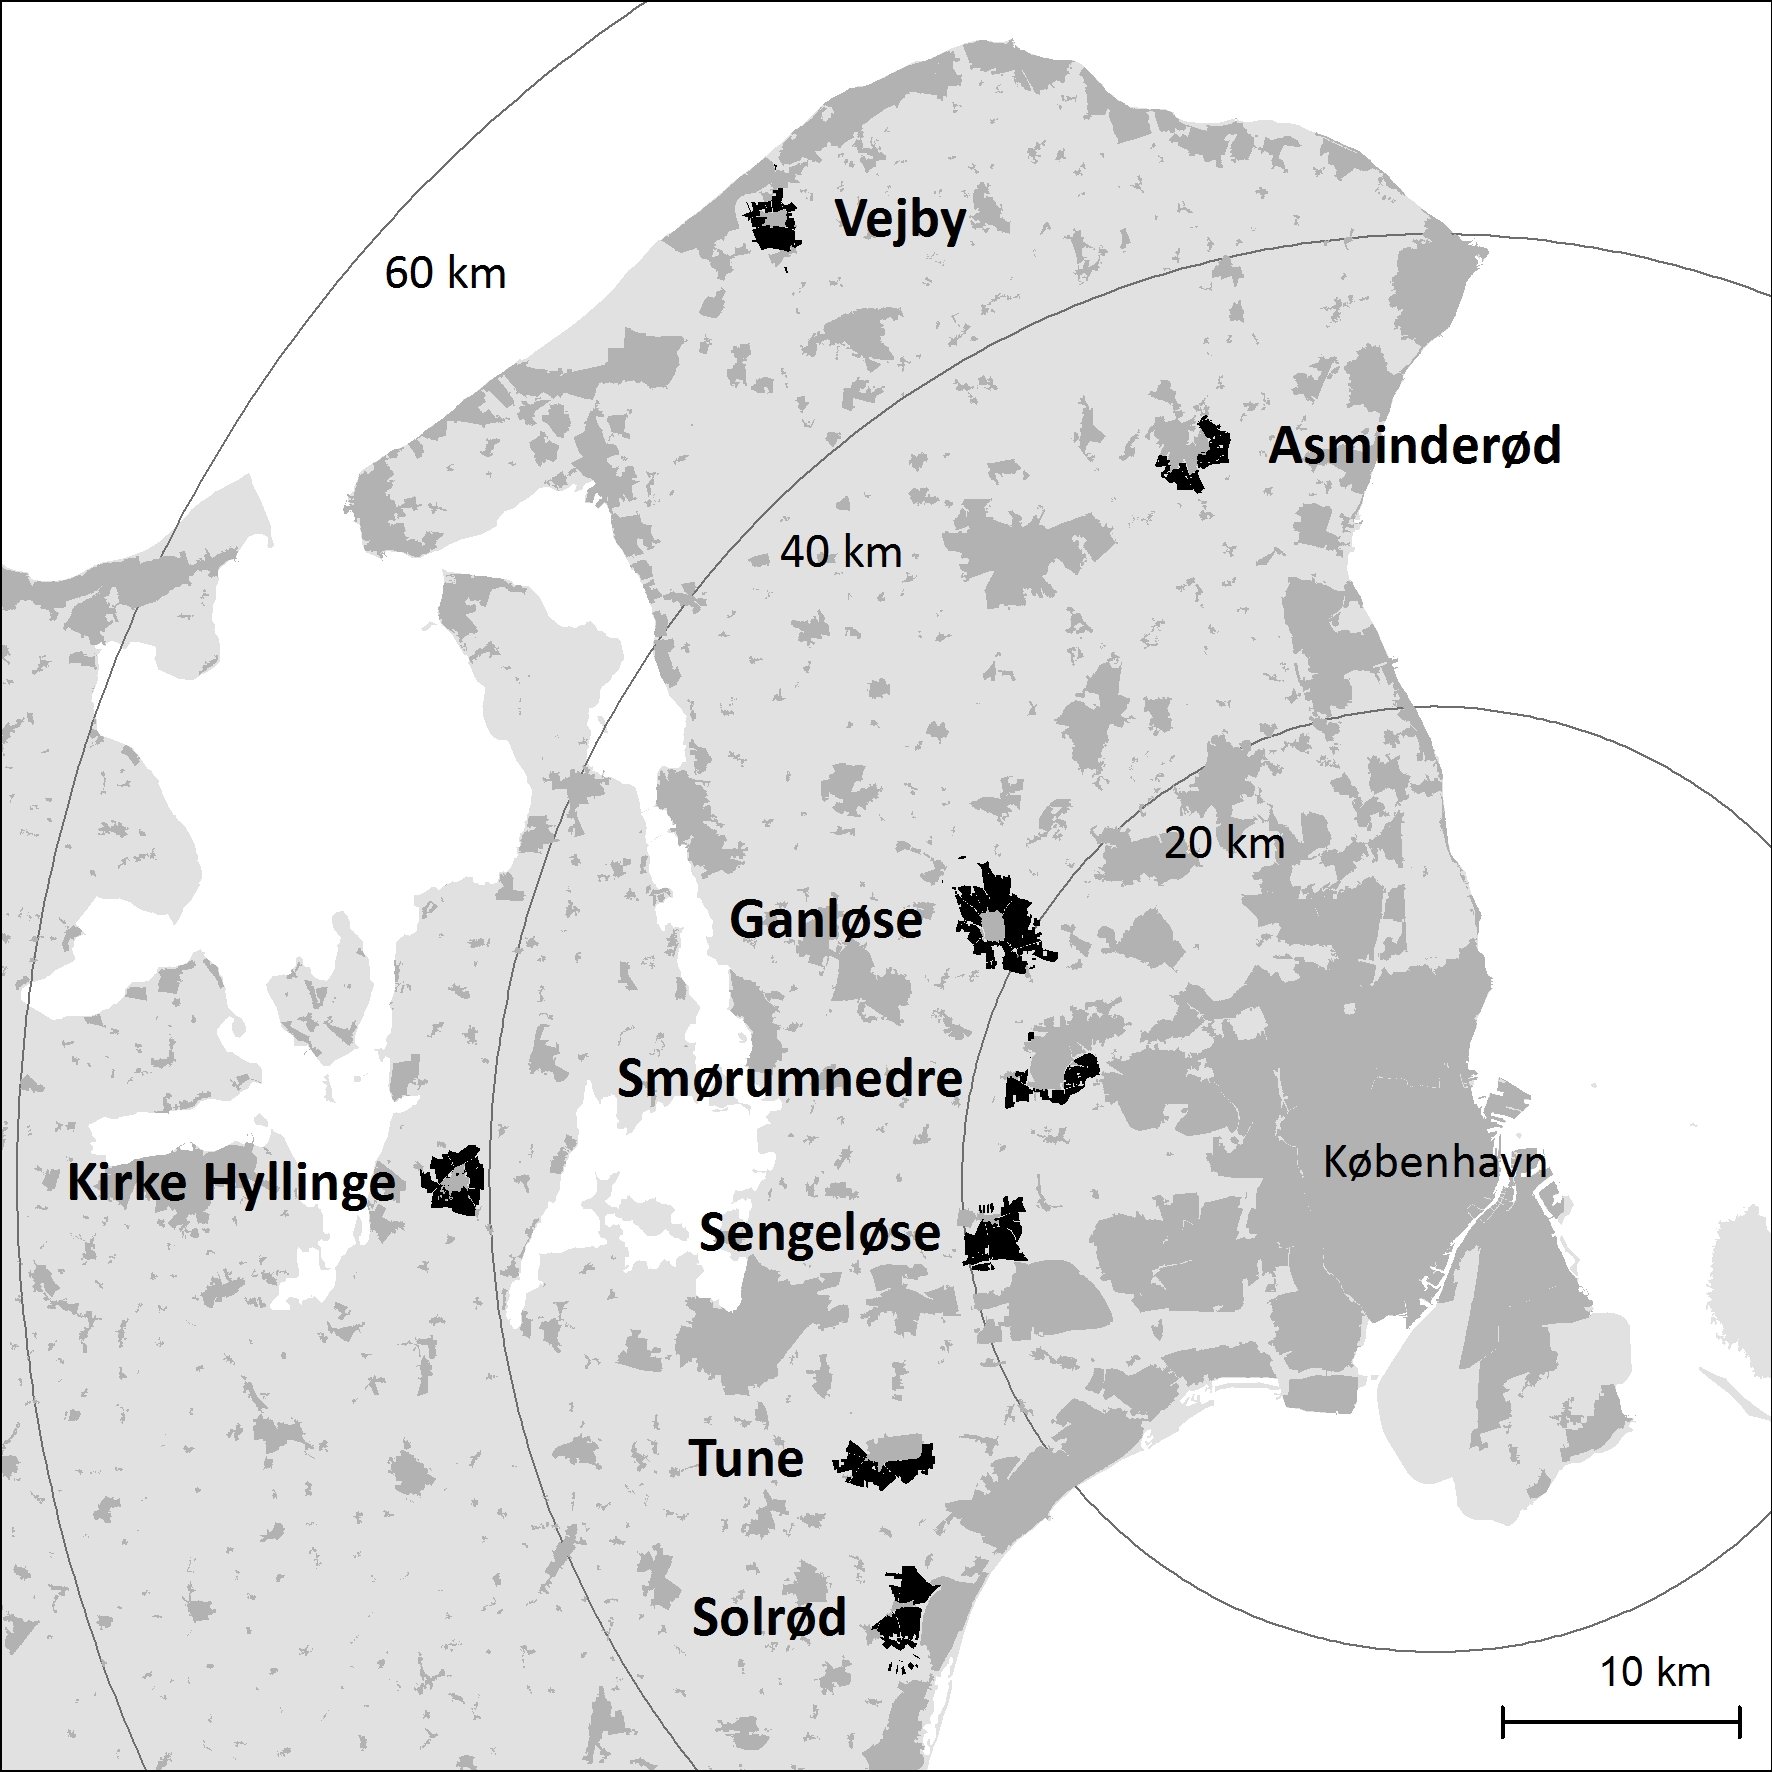 Figur 1. Placeringen af caseområder, med angivelse af afstanden til København som koncentriske cirkler om byen.